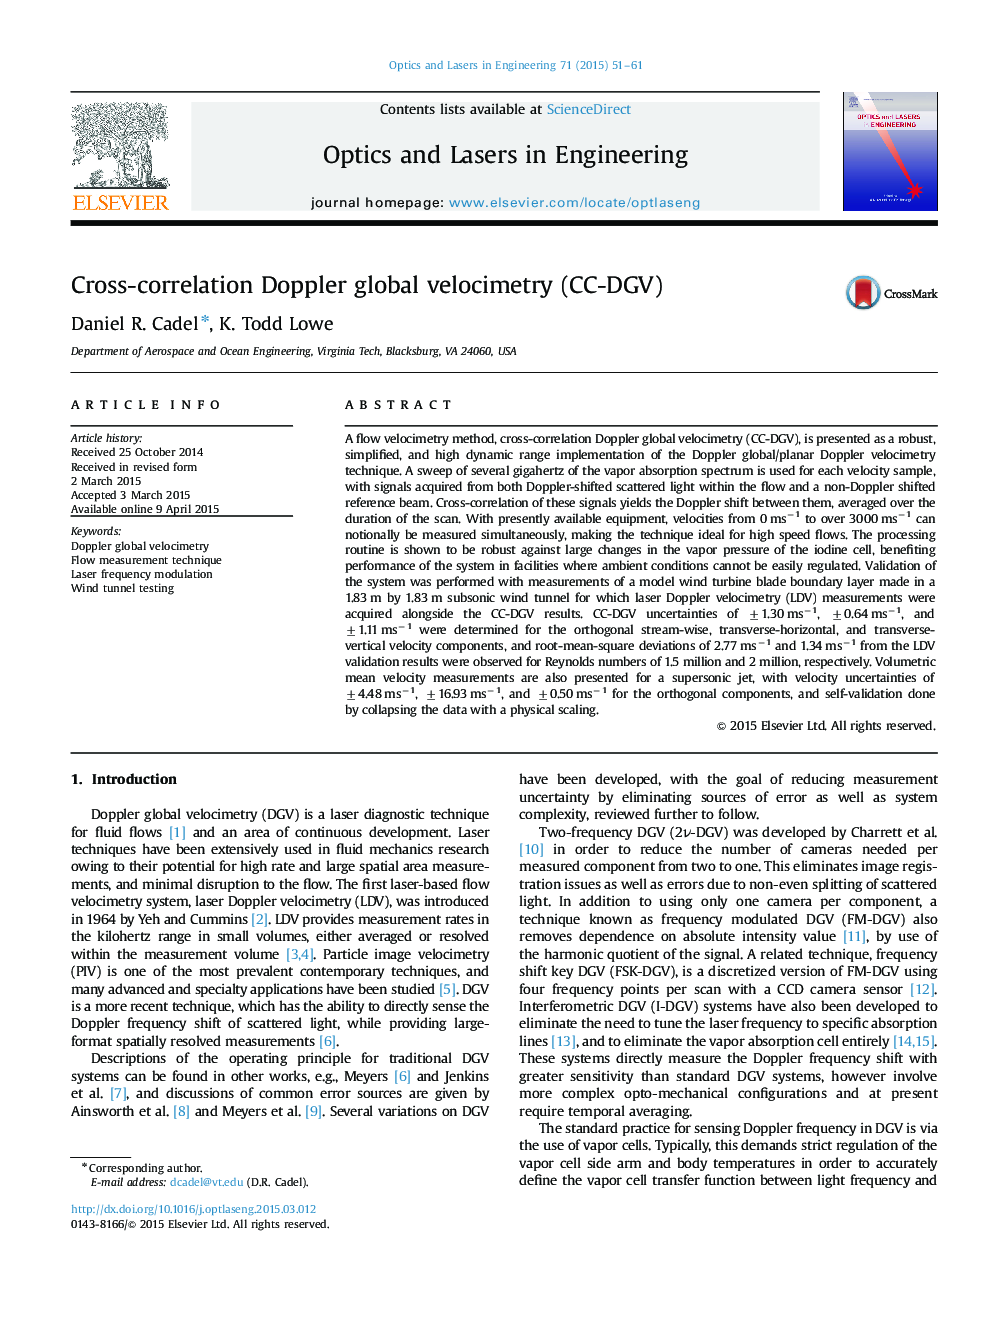 Cross-correlation Doppler global velocimetry (CC-DGV)